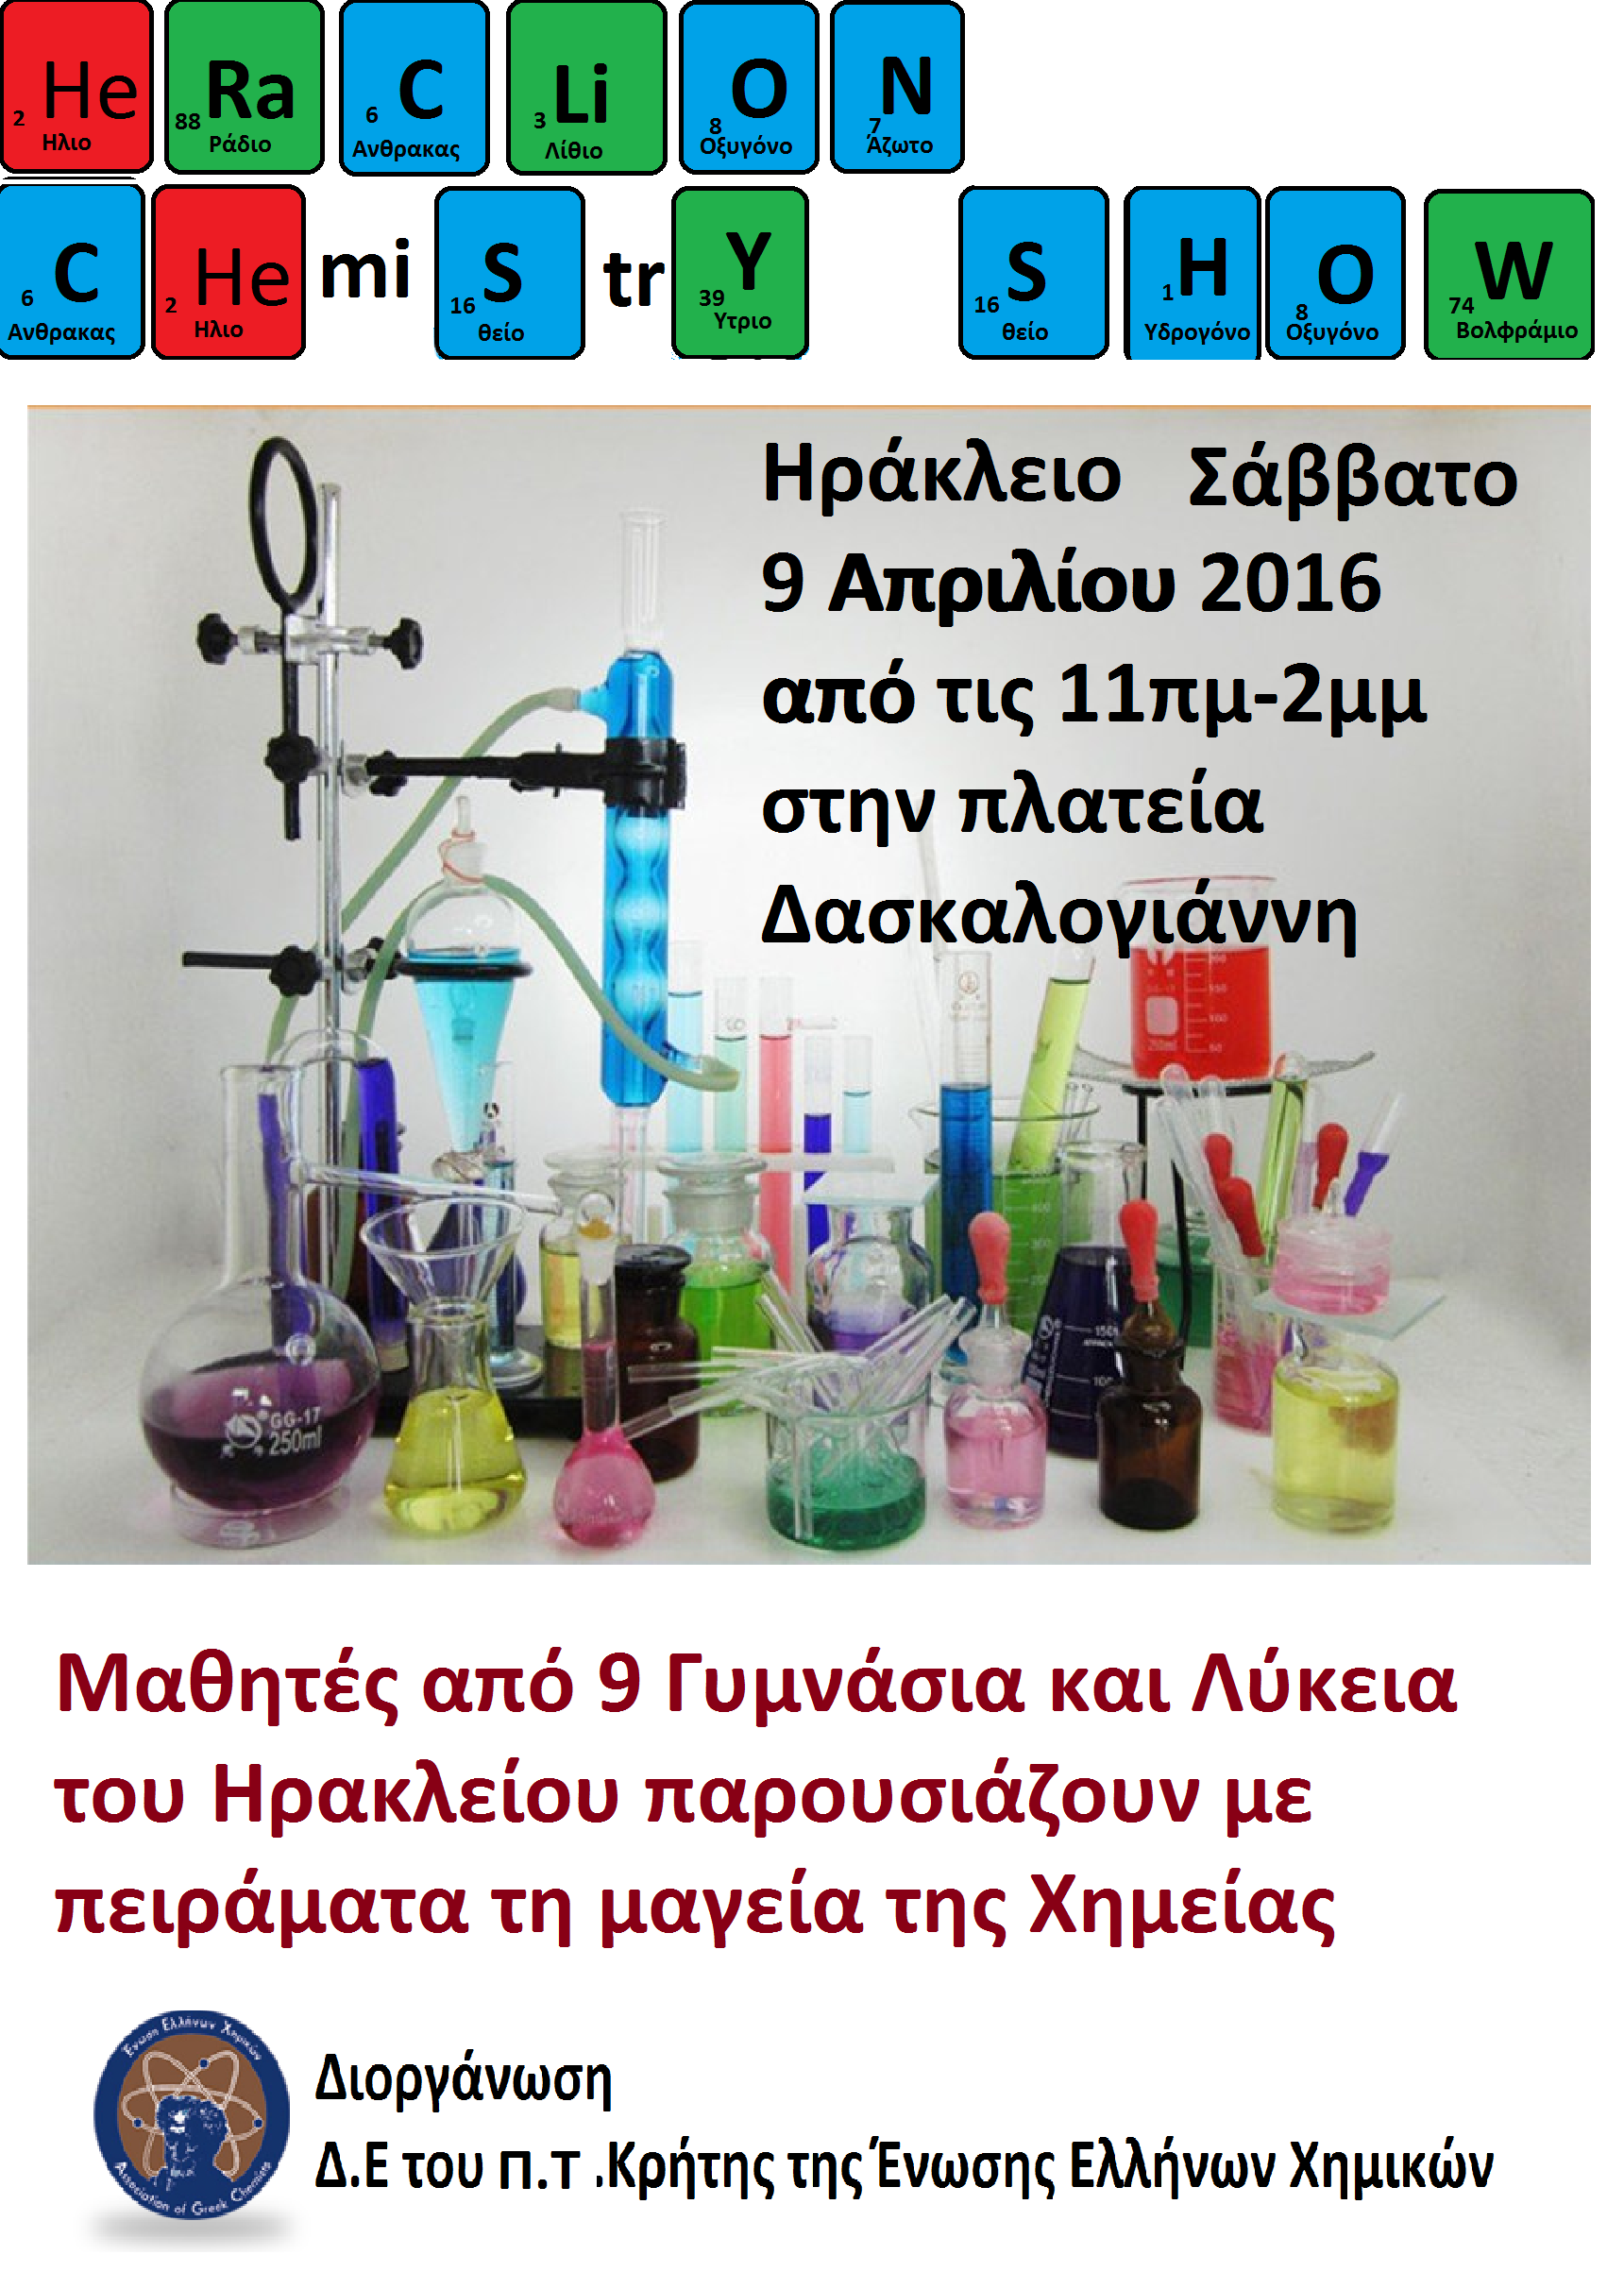 Μην χάσετε τη μαγεία των χημικών πειραμάτων το Σάββατο στο Ηράκλειο